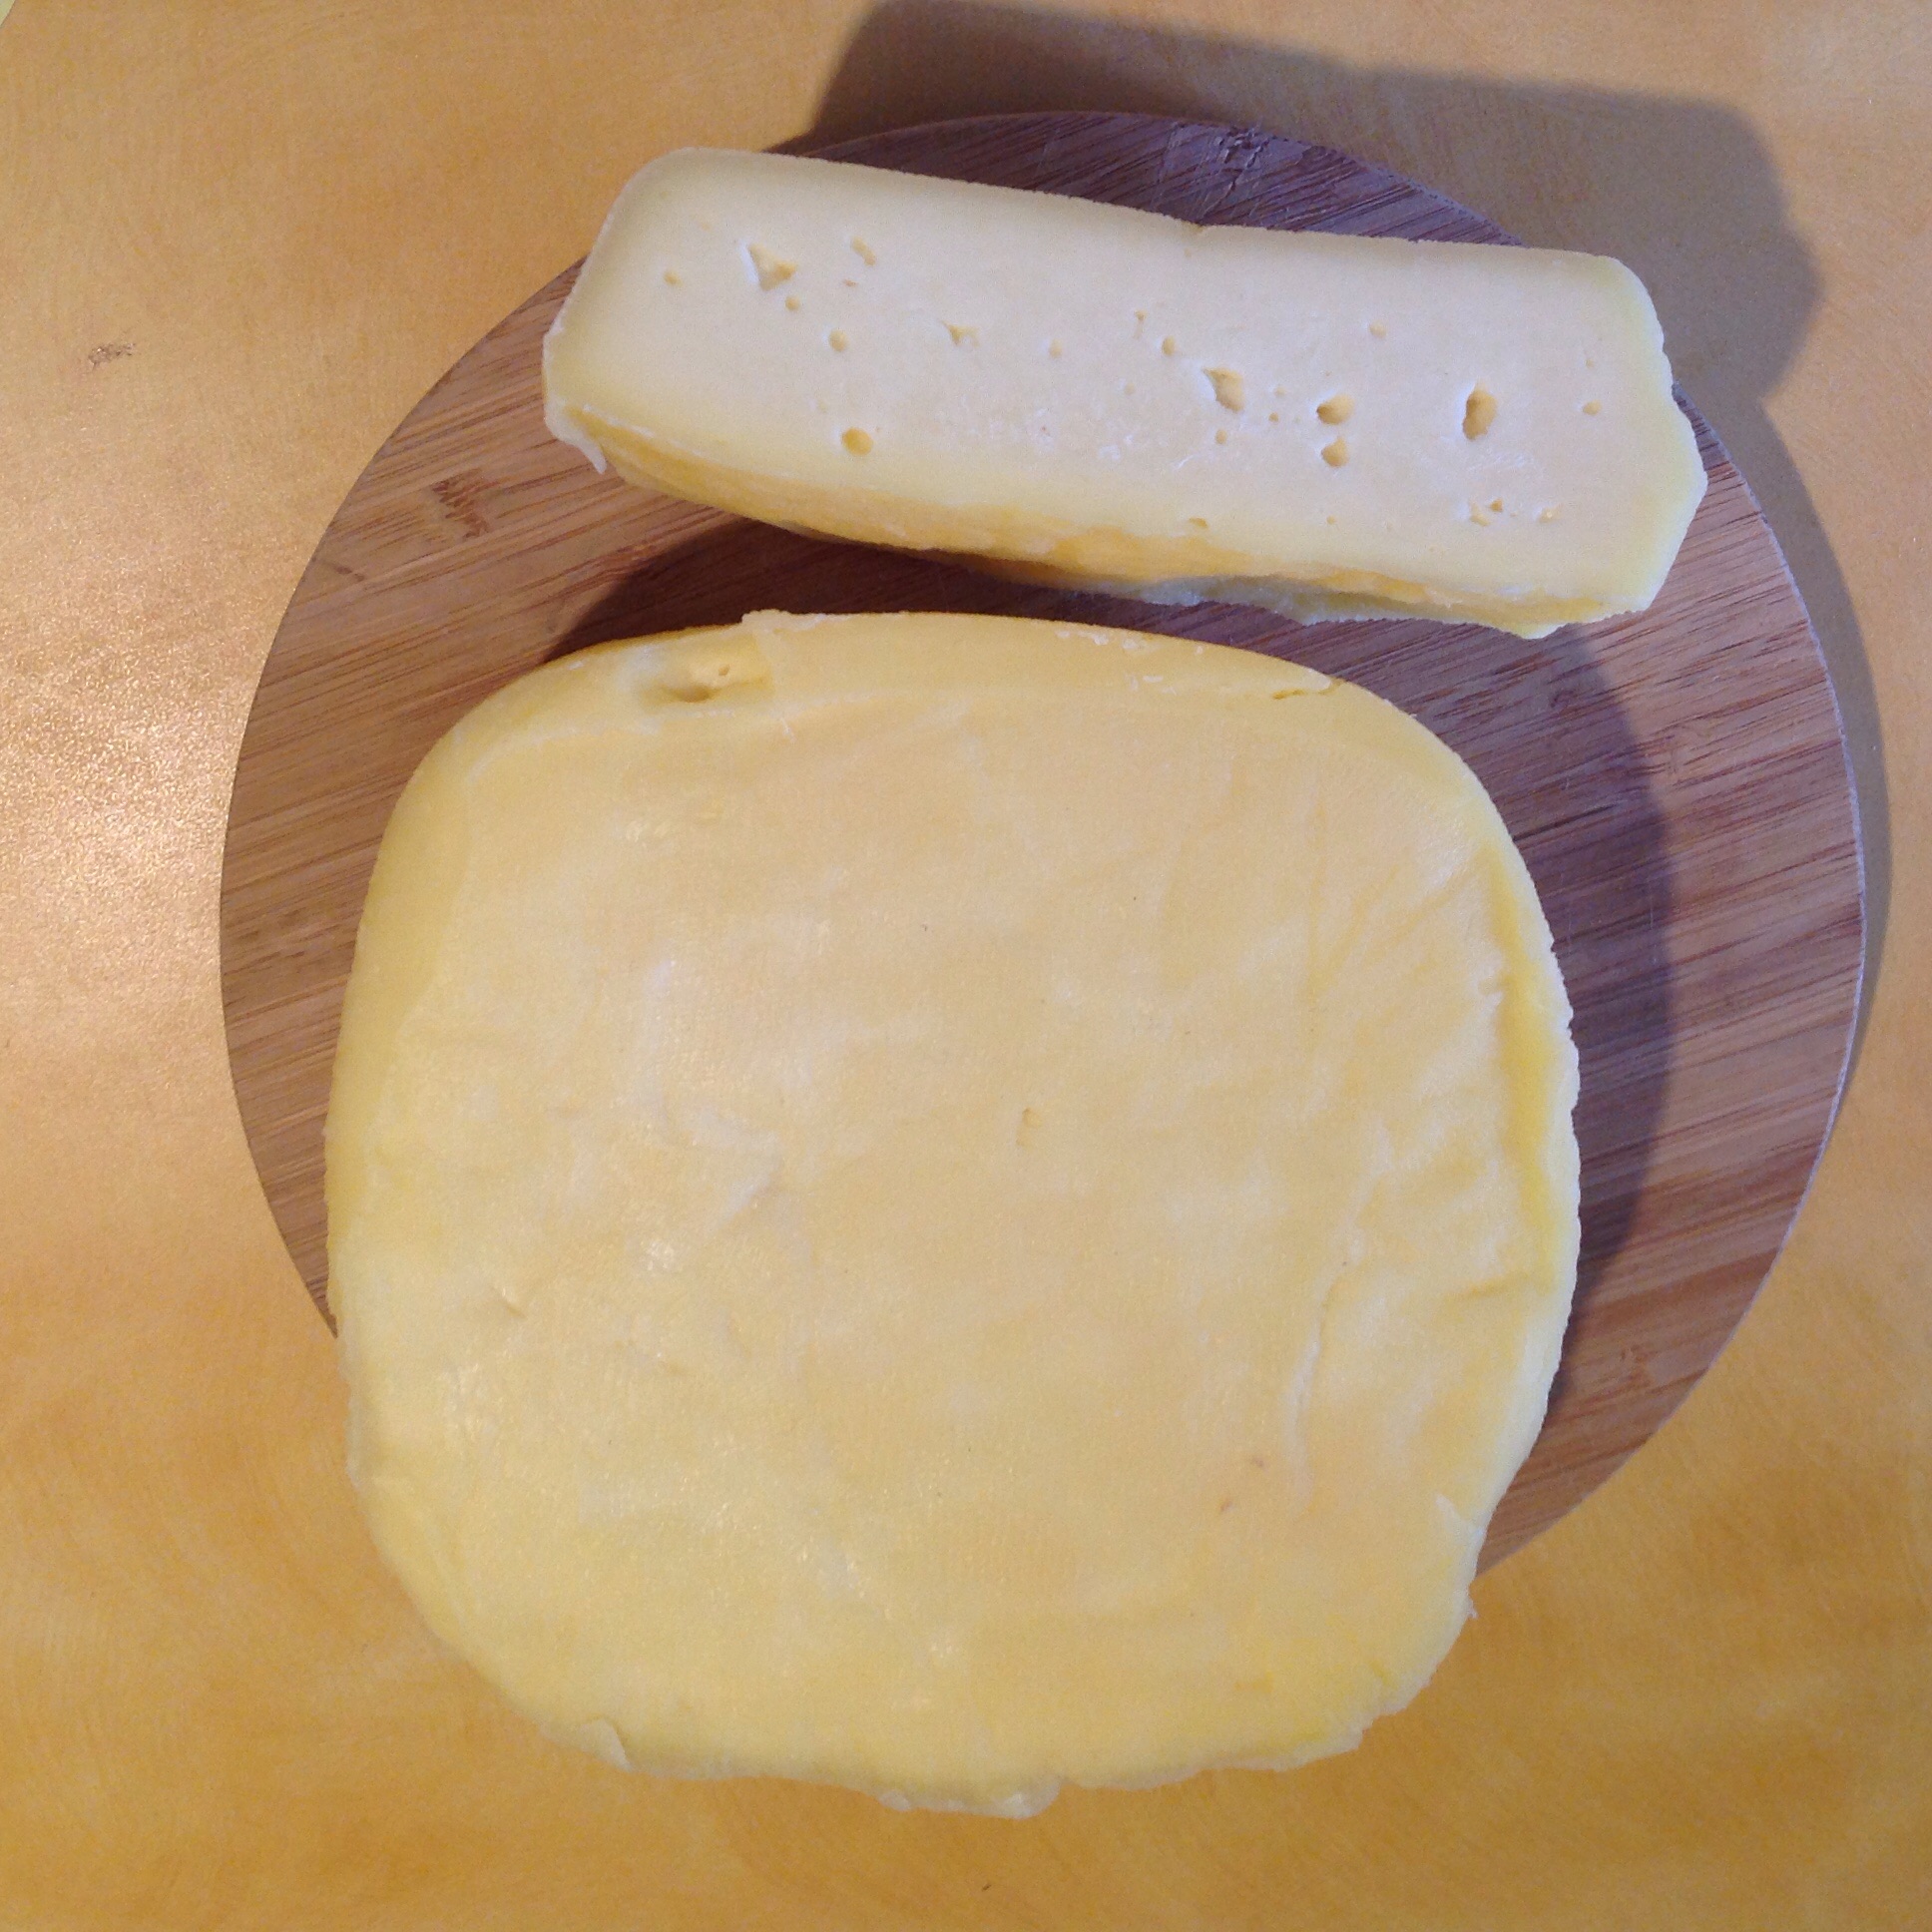 Рецепт сыра с сычужным ферментом домашних условиях рецепт фото